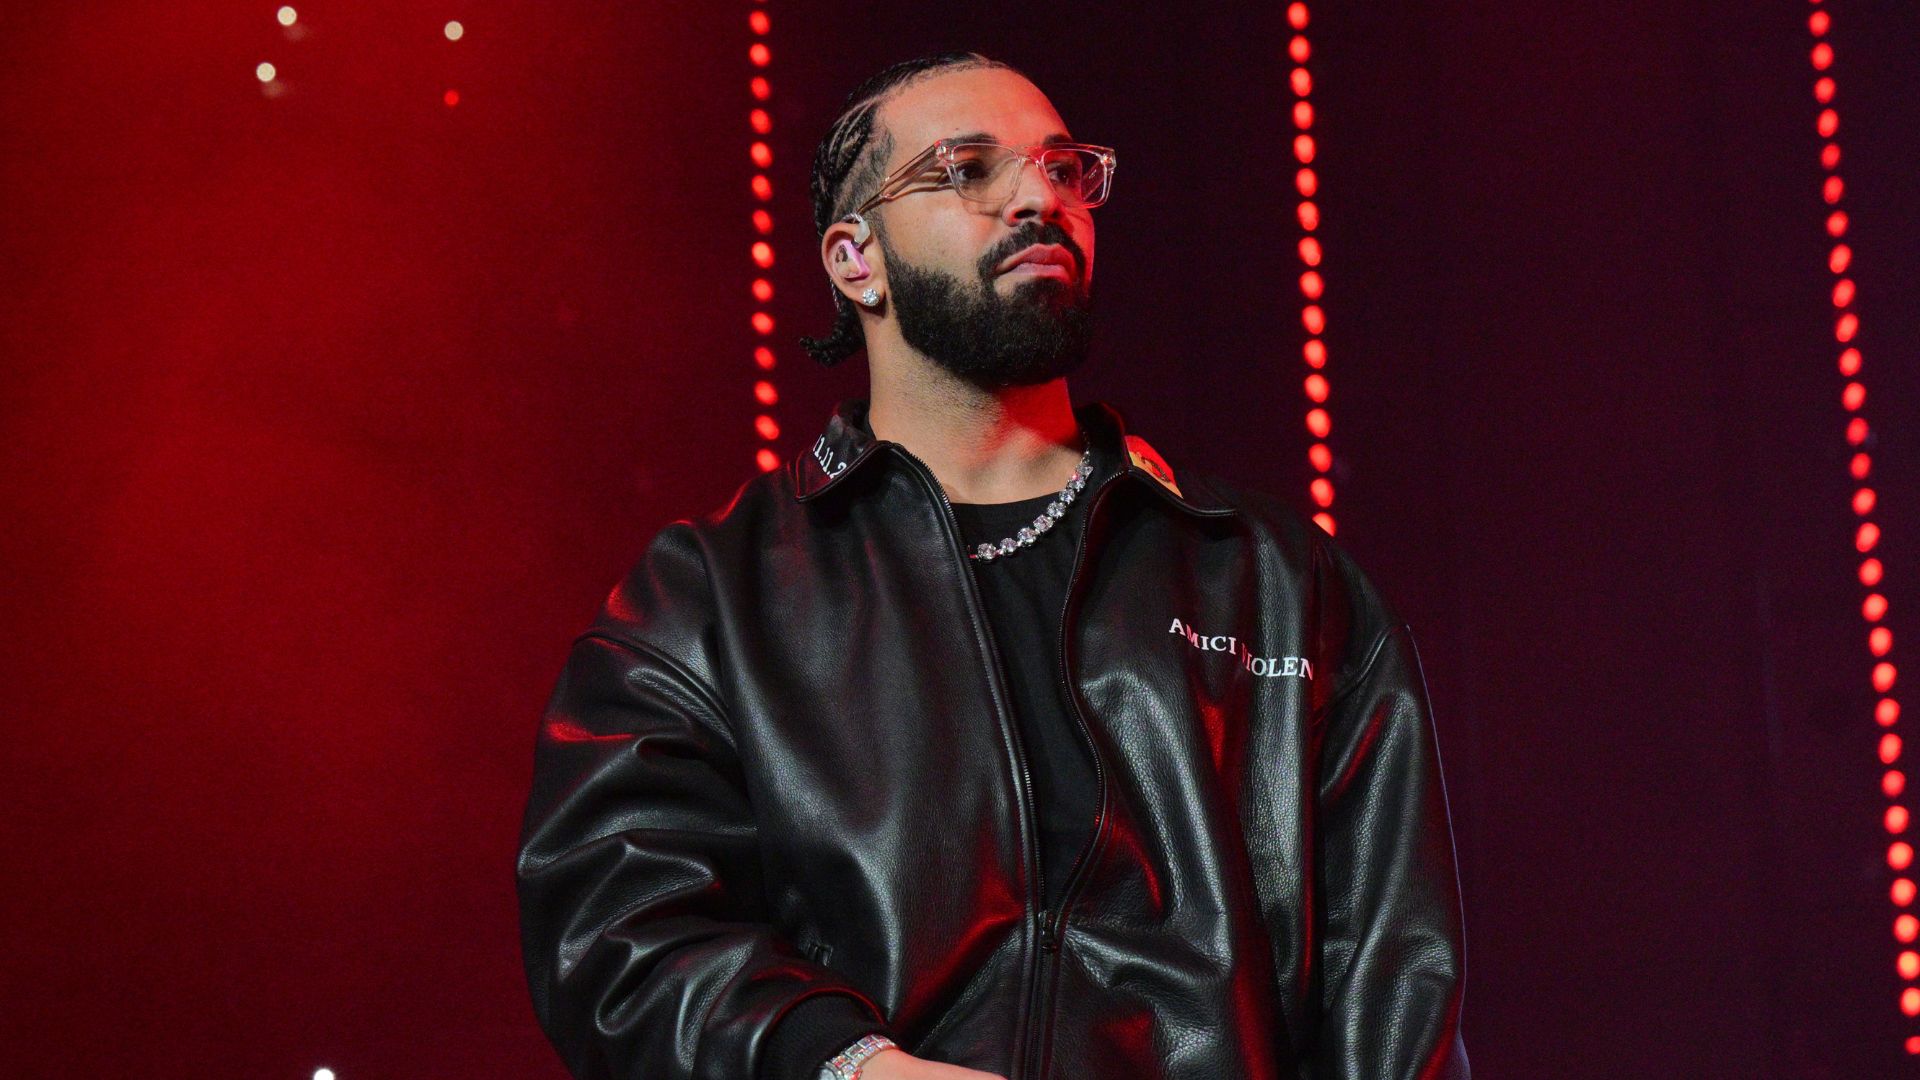 Fã que gastou dinheiro dos móveis para comprar ingresso de Drake é surpreendido com bolada de dinheiro do rapper; assista